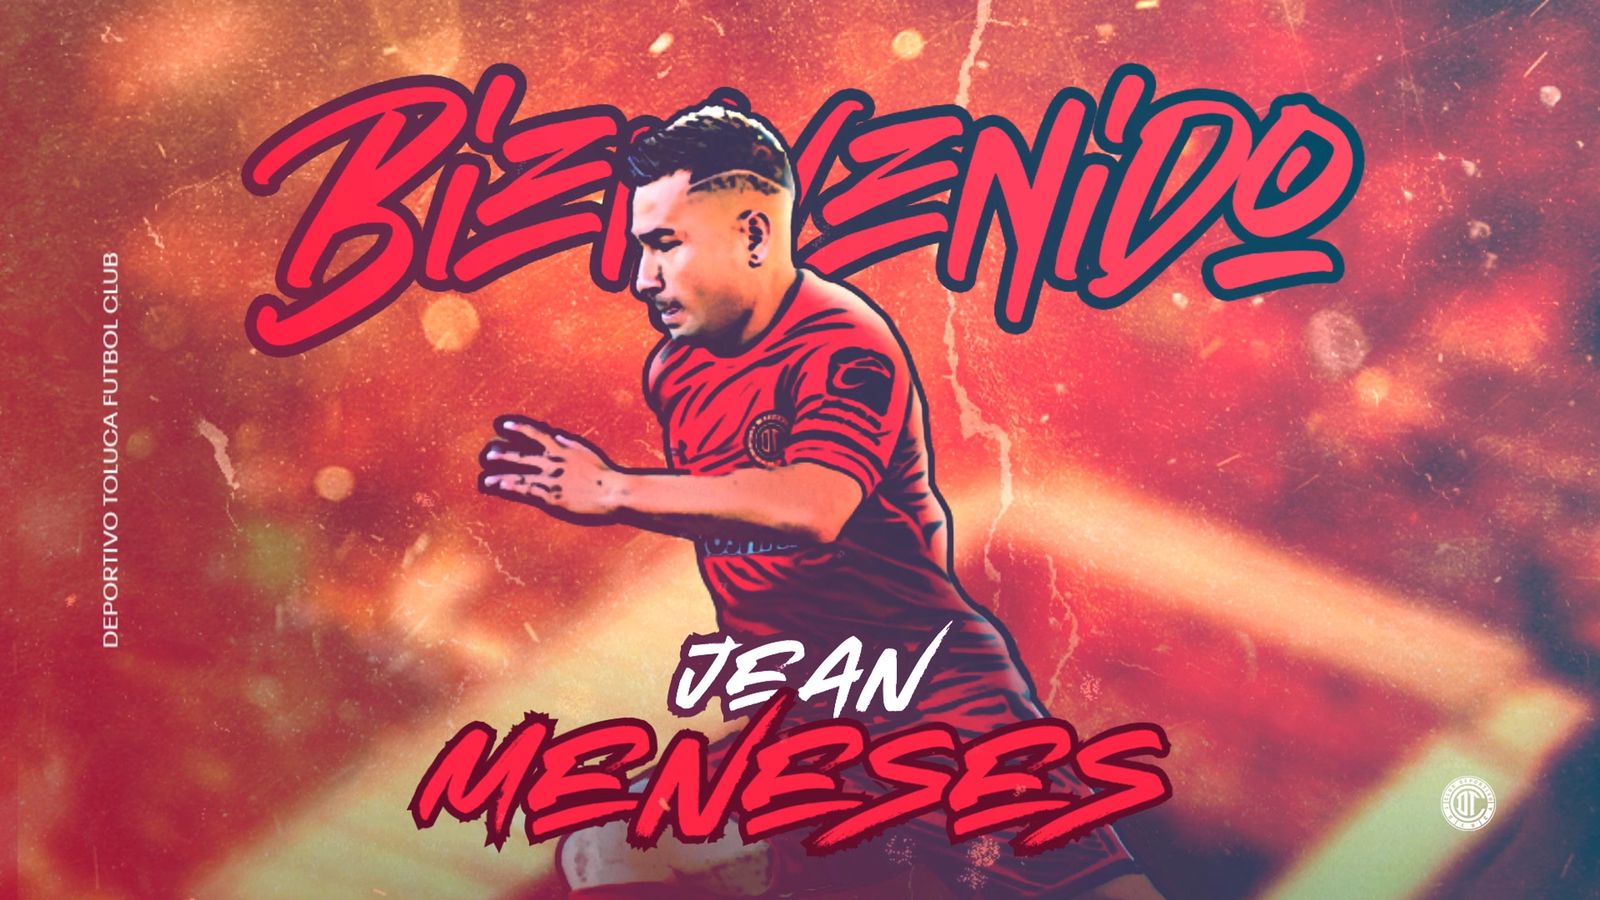 Jean Meneses